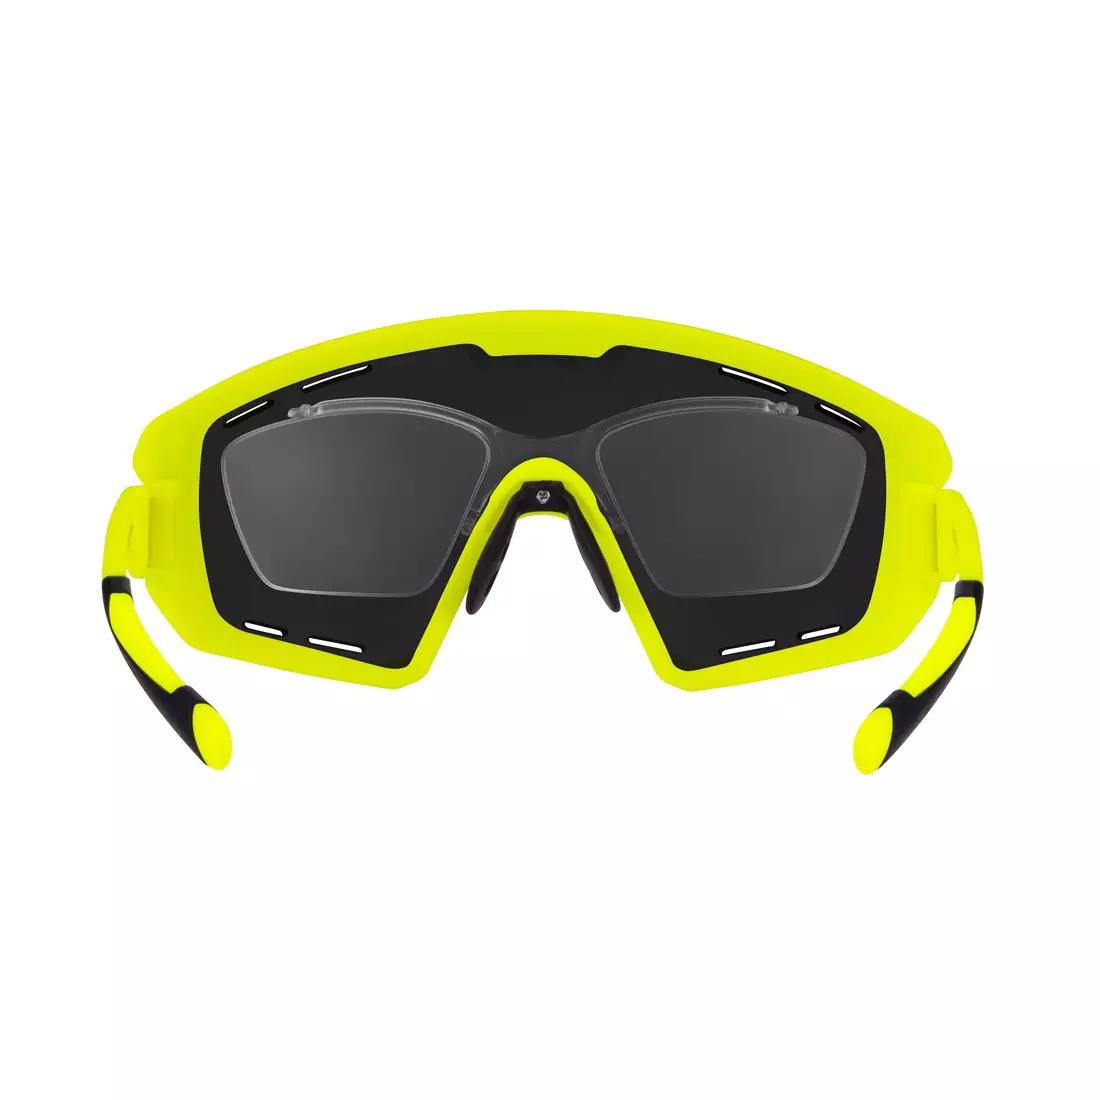 FORCE kerékpáros / sport szemüveg OMBRO PLUS fluo mat 91120